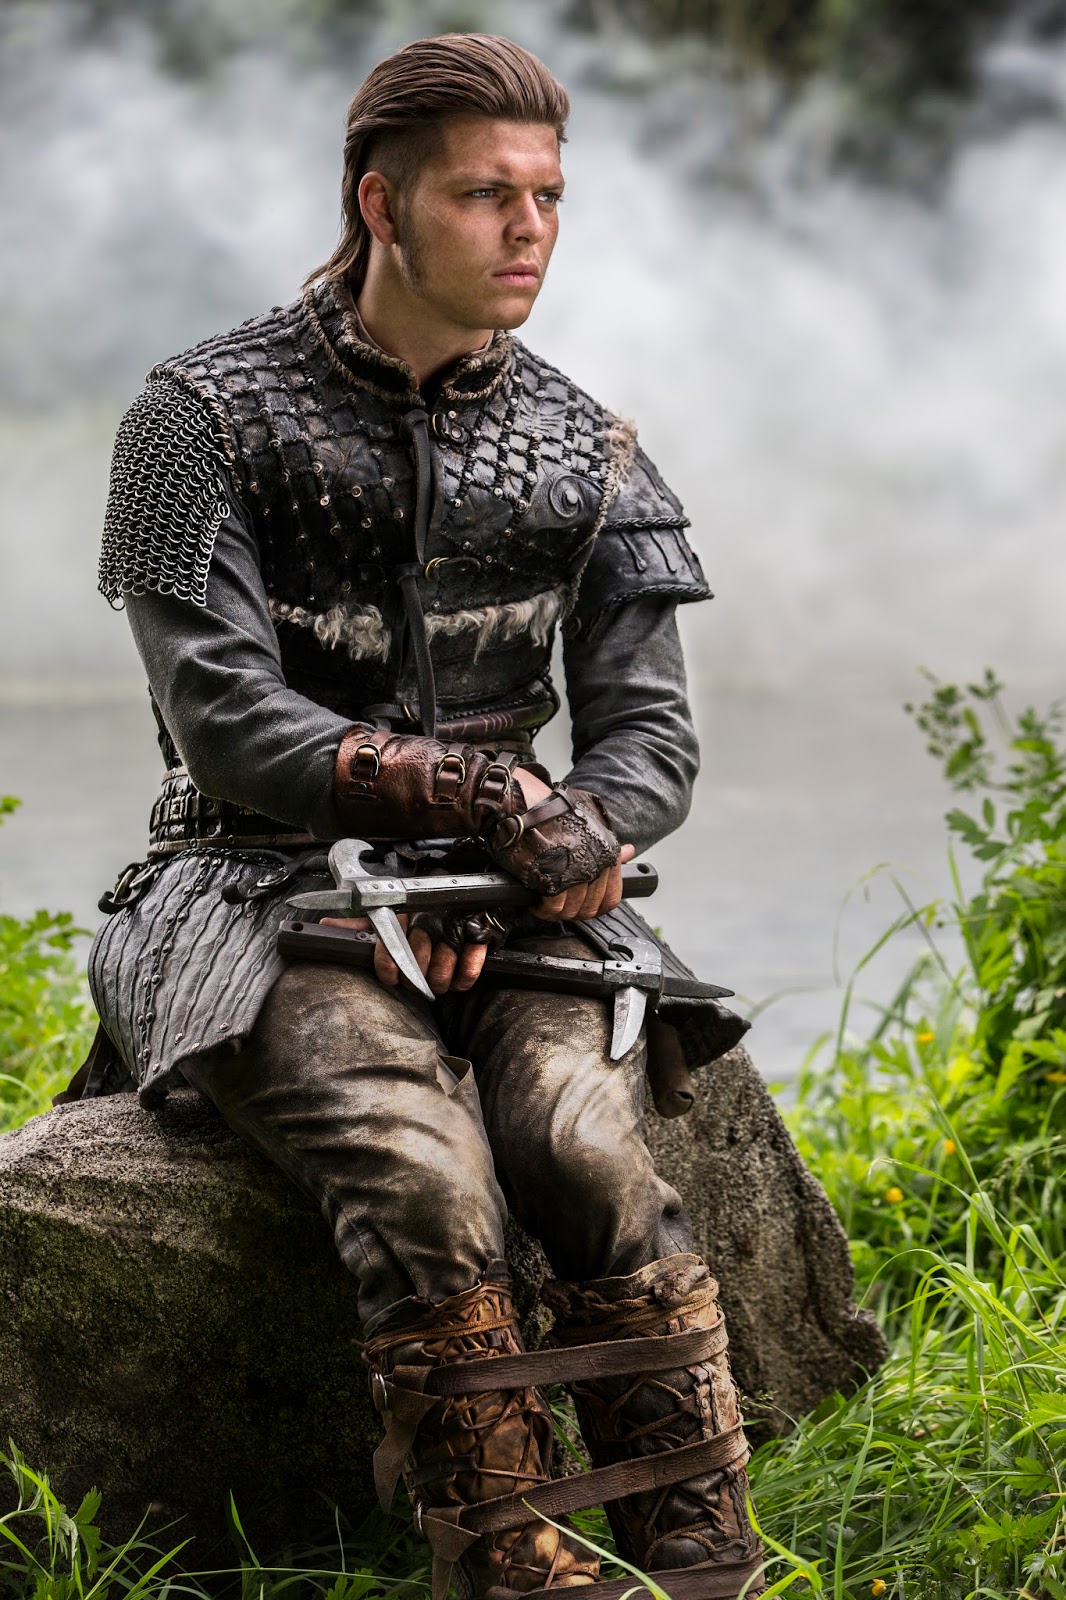 Vikings da Depressão - Hoje é aniversário do ator dinamarquês Alex Høgh  Andersen (26 anos). Ele interpreta o personagem Ivar, o Dessossado, um dos  herdeiros de Ragnar Lothbrok mais importantes e temidos